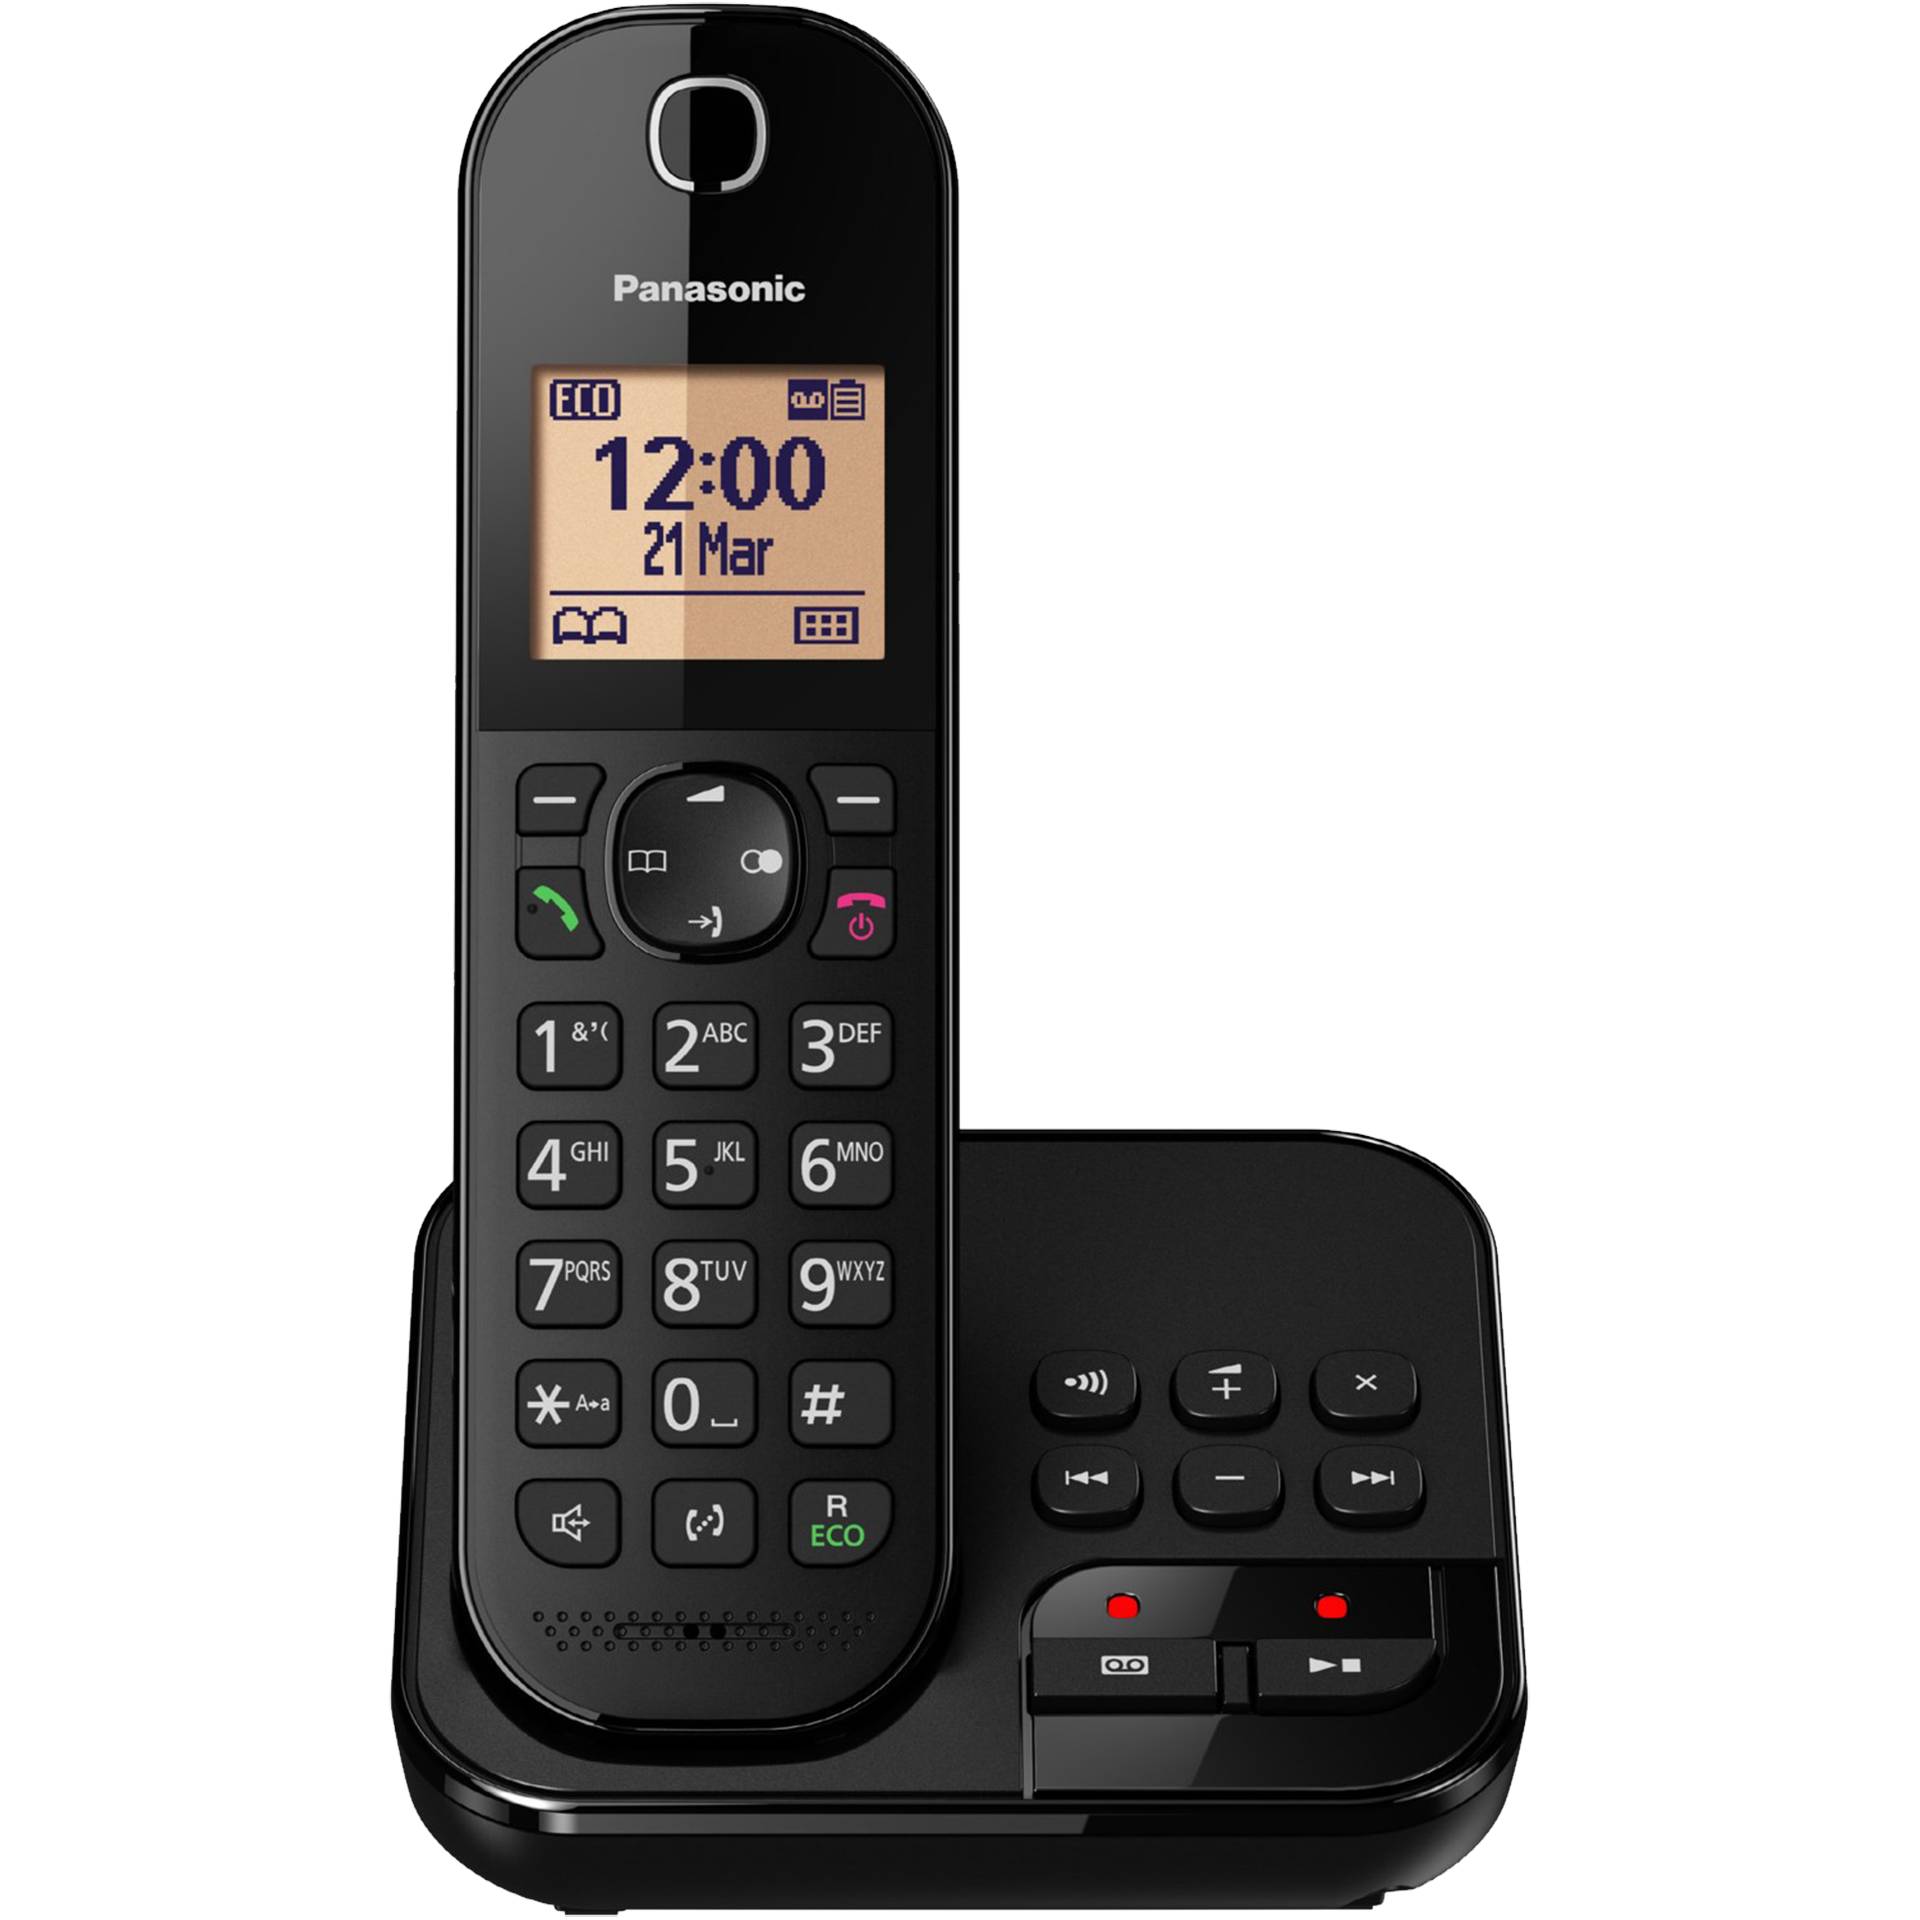 Panasonic KX-TGC420 schwarz, Analogtelefon (schnurlos) mit Anrufbeantworter